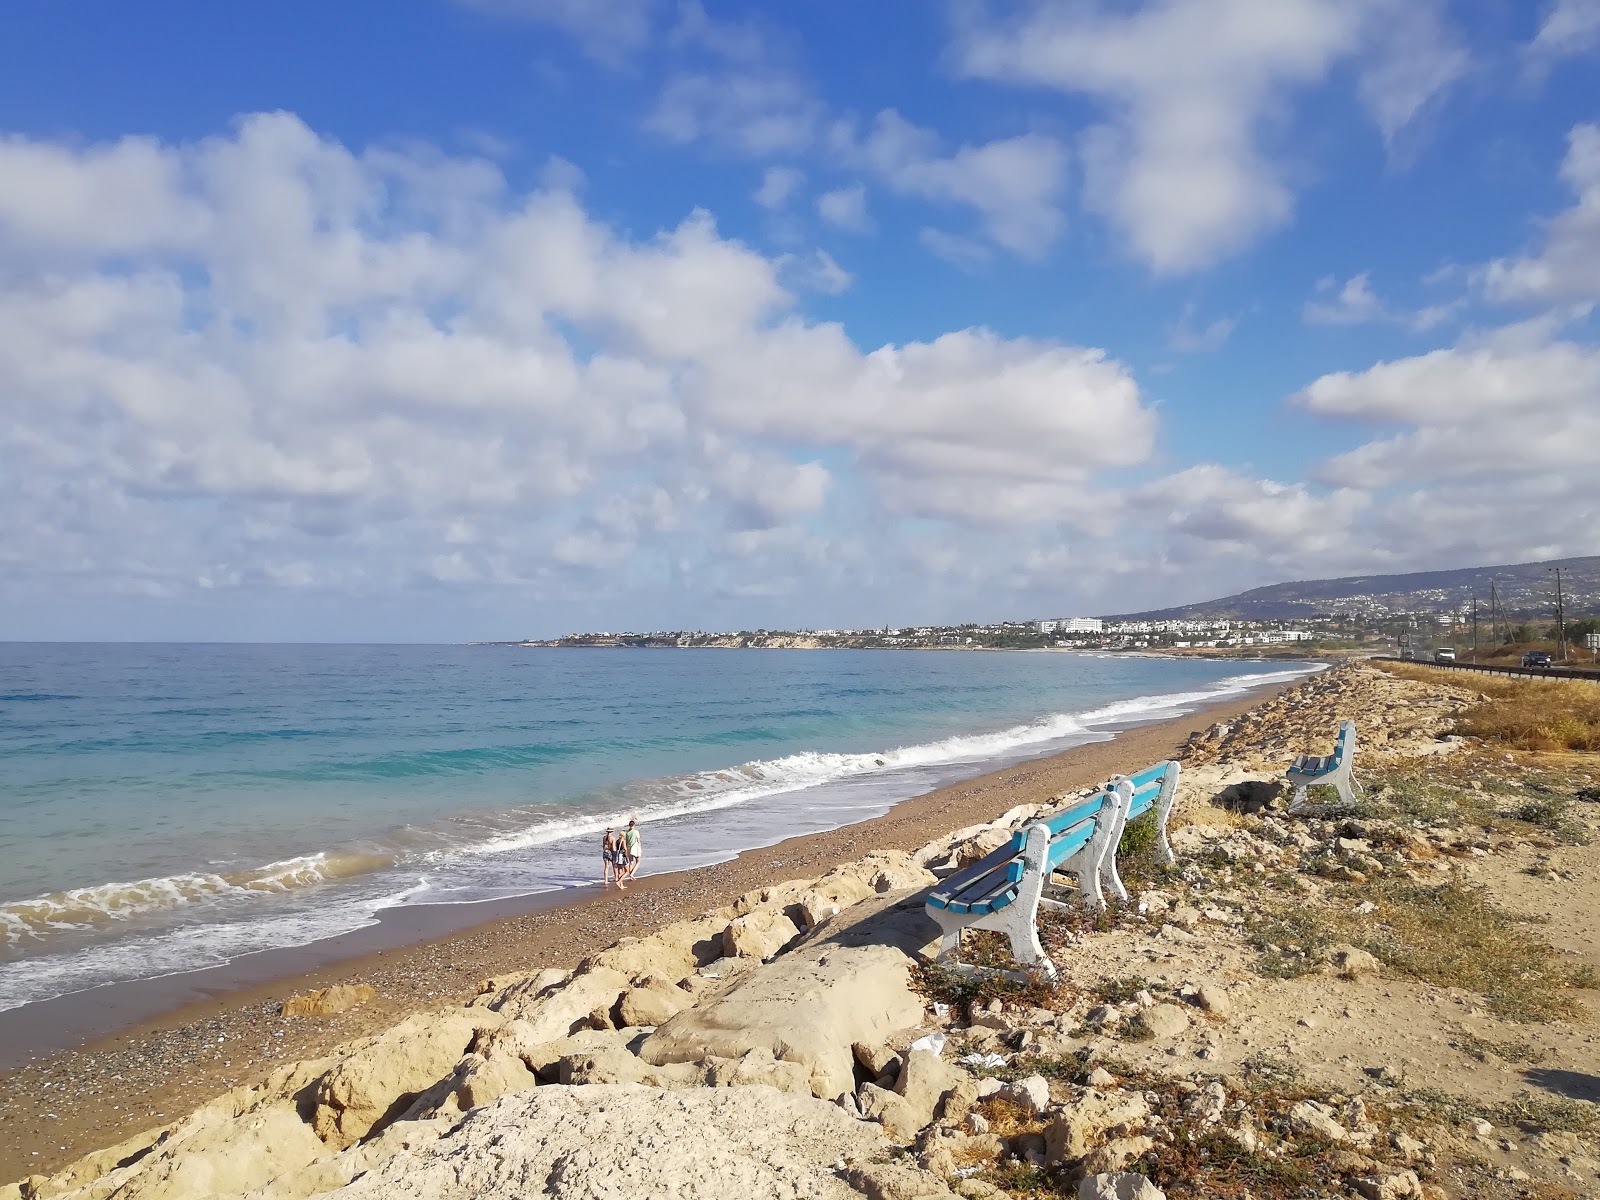 Potima beach'in fotoğrafı gri kum ve çakıl yüzey ile